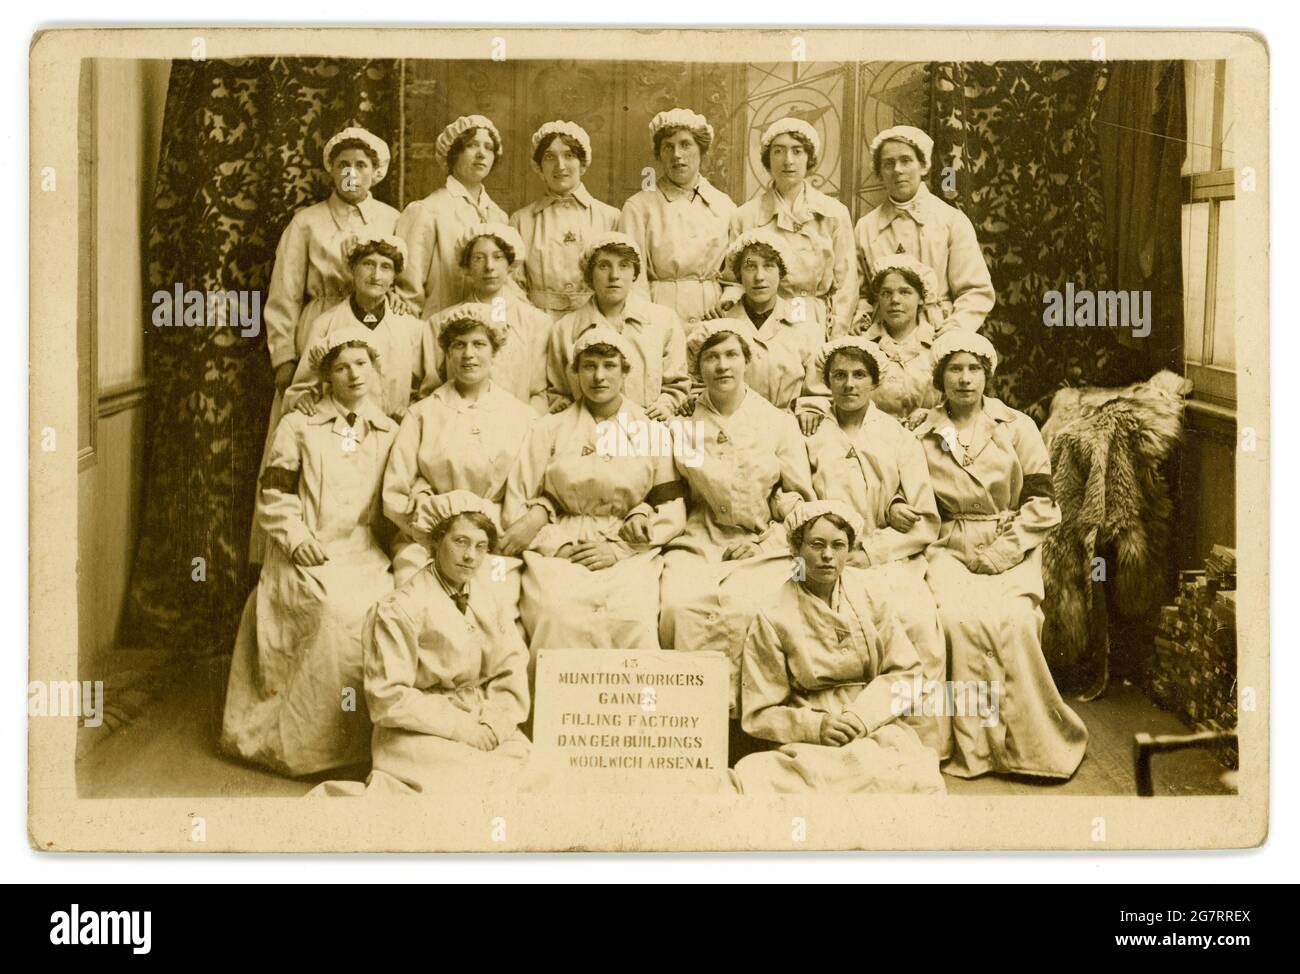 Die ursprüngliche Postkarte aus der Zeit von WW1 lautet: „Munitionsarbeiter Gaines“, die Gebäude der Fabrik füllen Woolwich Arsenal, die Frauen tragen „Kriegsdienstabzeichen“, veröffentlicht 1917, Woolwich, London, Großbritannien Stockfoto